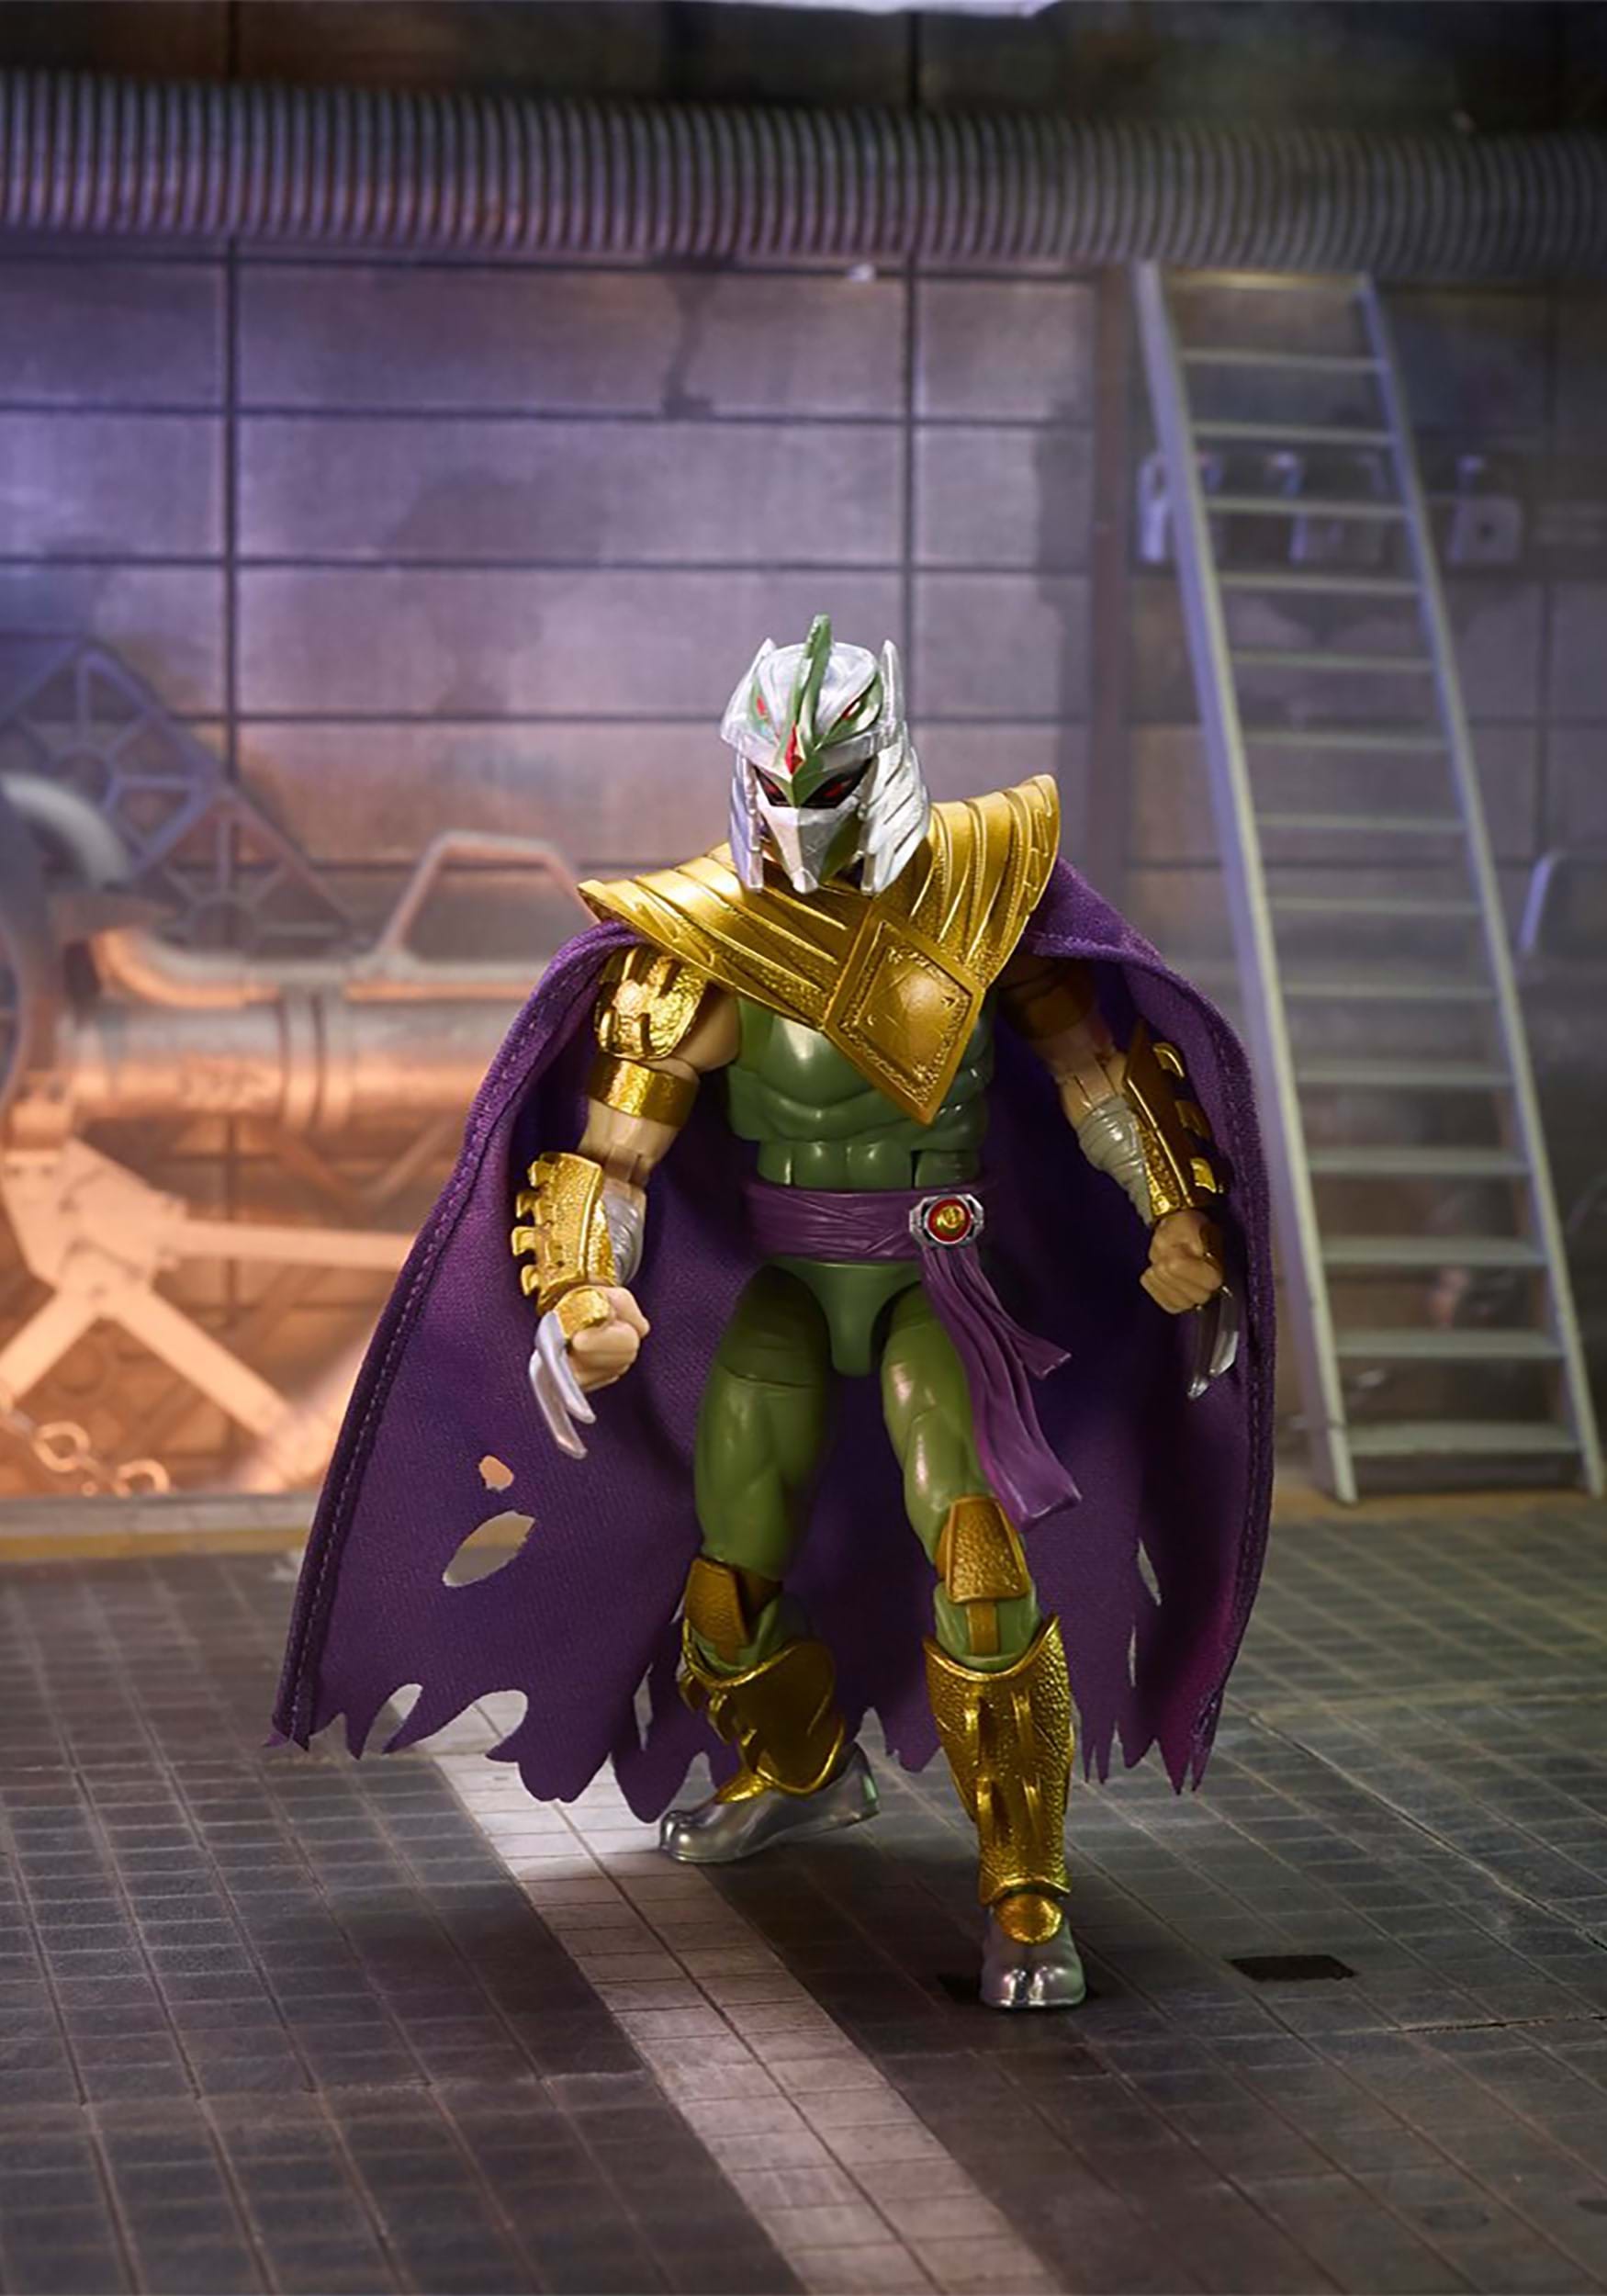 Power Rangers X TMNT Lightning Collection Morphed Shredder Green Ranger Action Figure